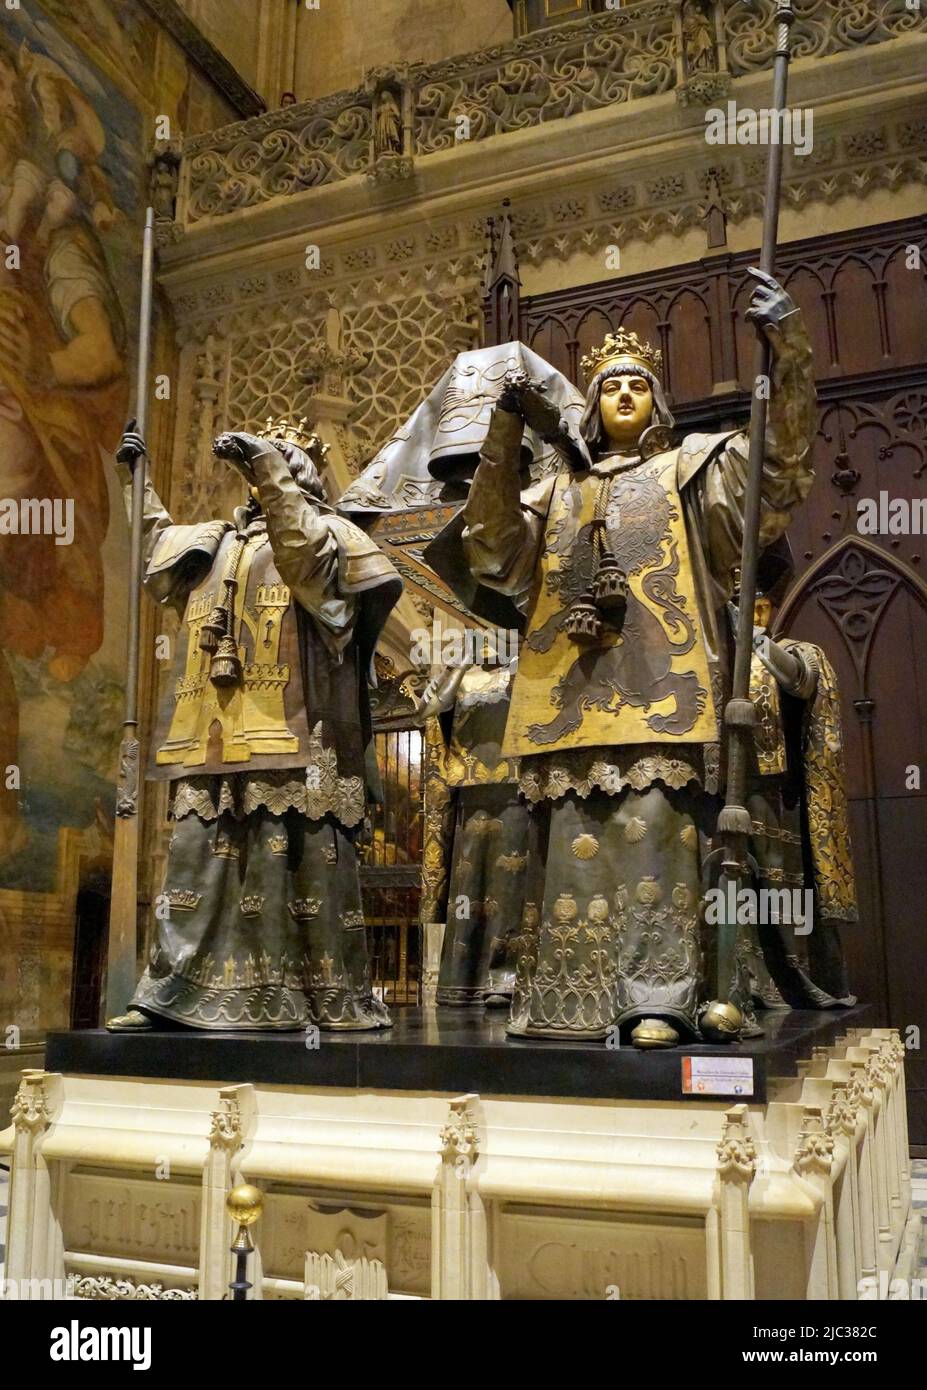 Tumba de Cristóbal Colón en la Catedral de Sevilla, grupo escultórico, reyes de Castilla, León, Aragón, Y Navarra con los restos, Sevilla, España Foto de stock